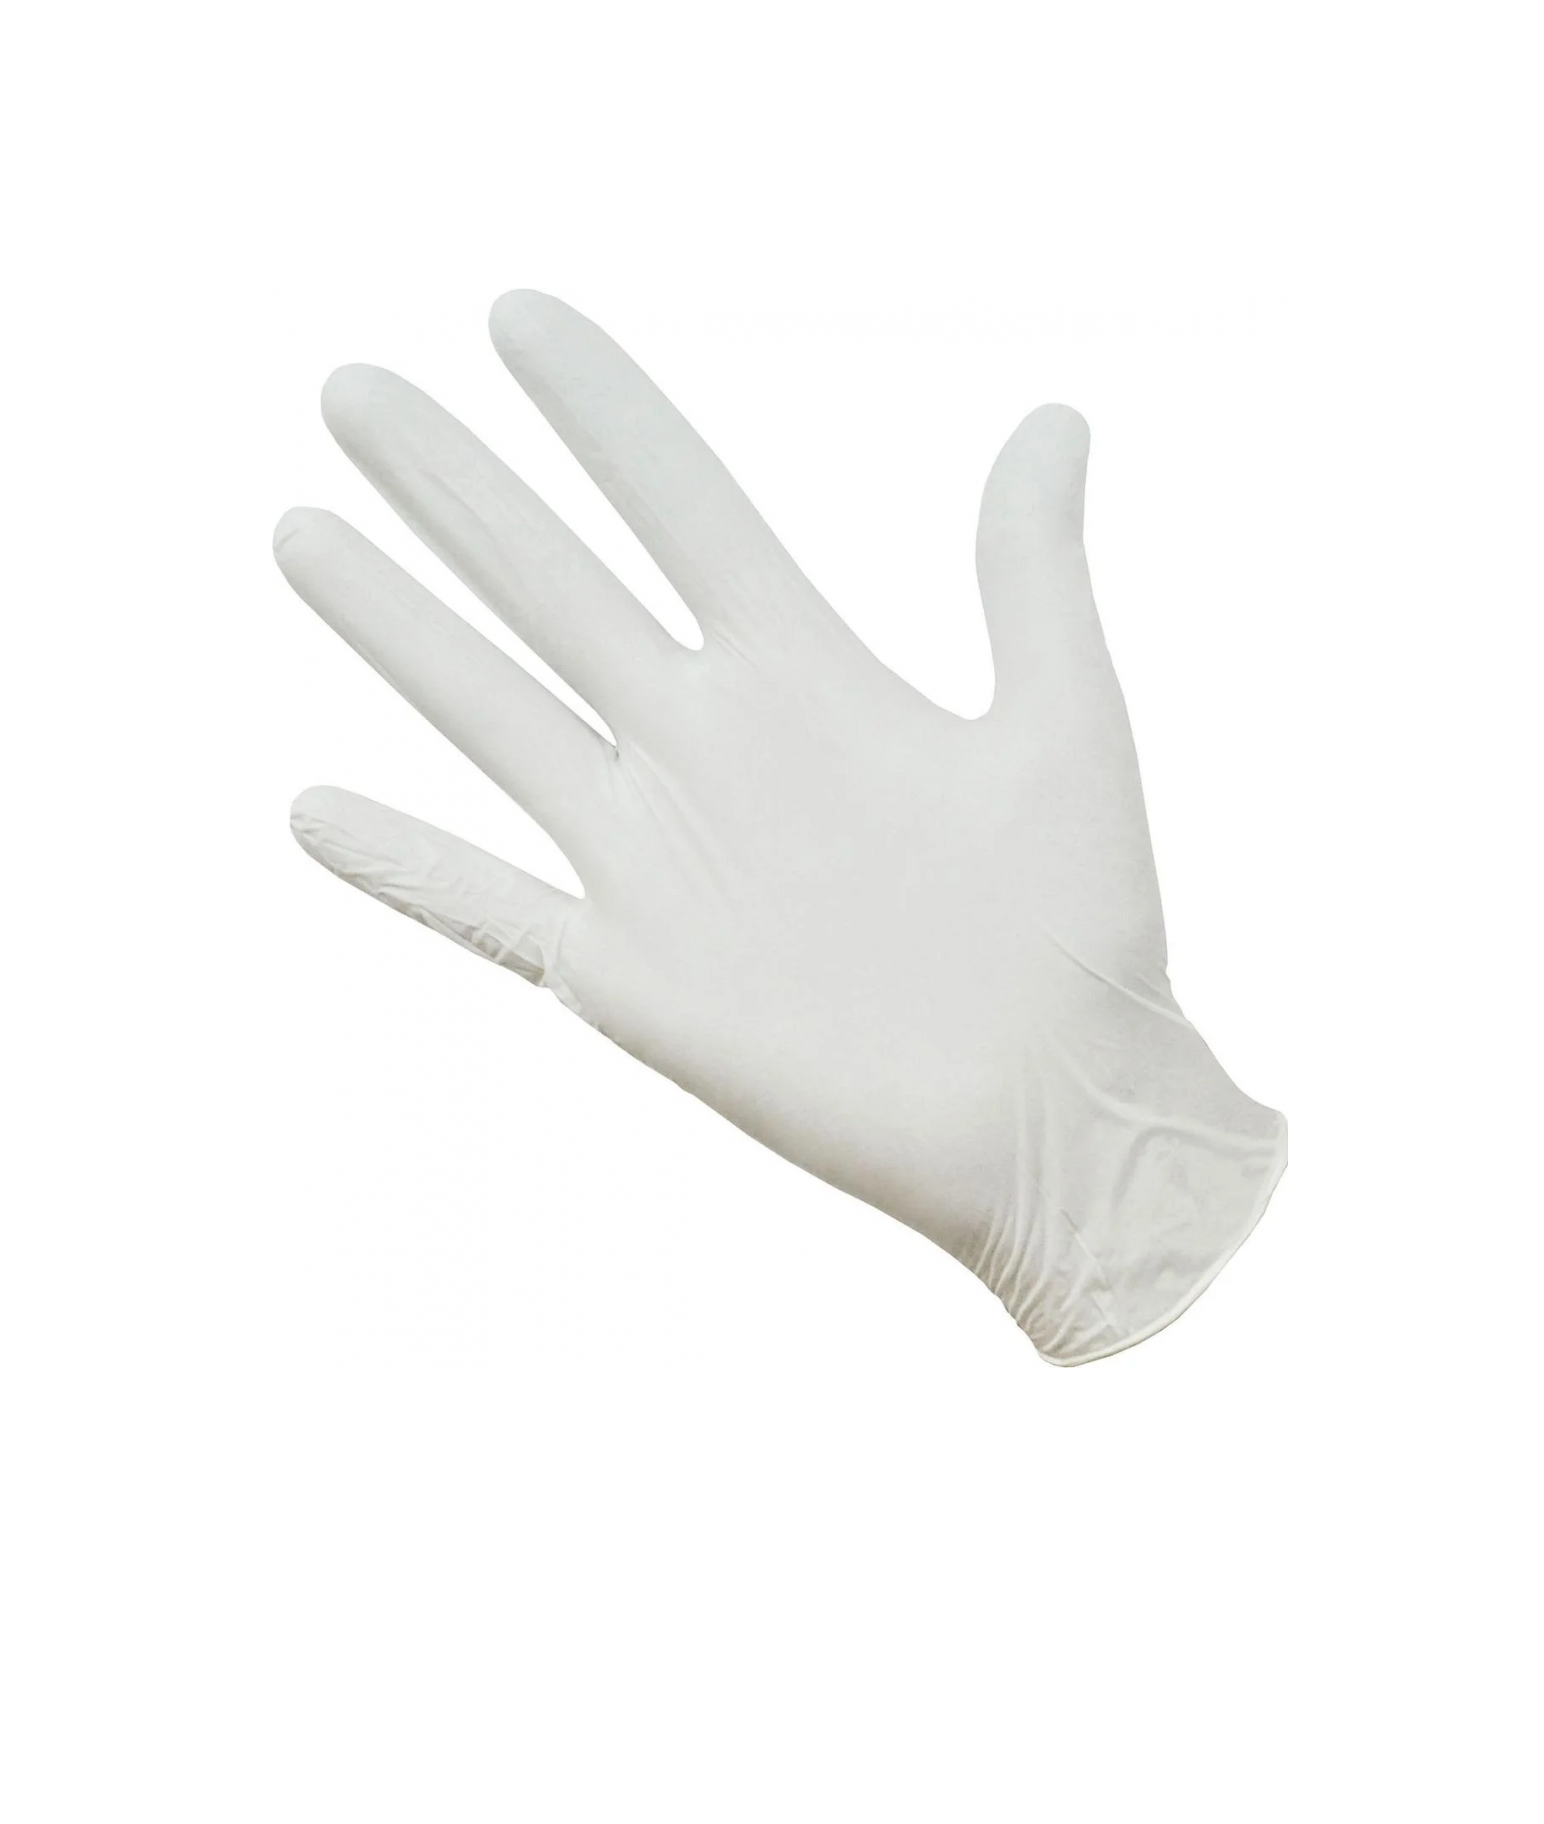 Перчатки Gward,белые, нитриловые, Deltagrip Ultra, LS, размер 7,S, 50пар перчатки нитриловые qualita 10шт s